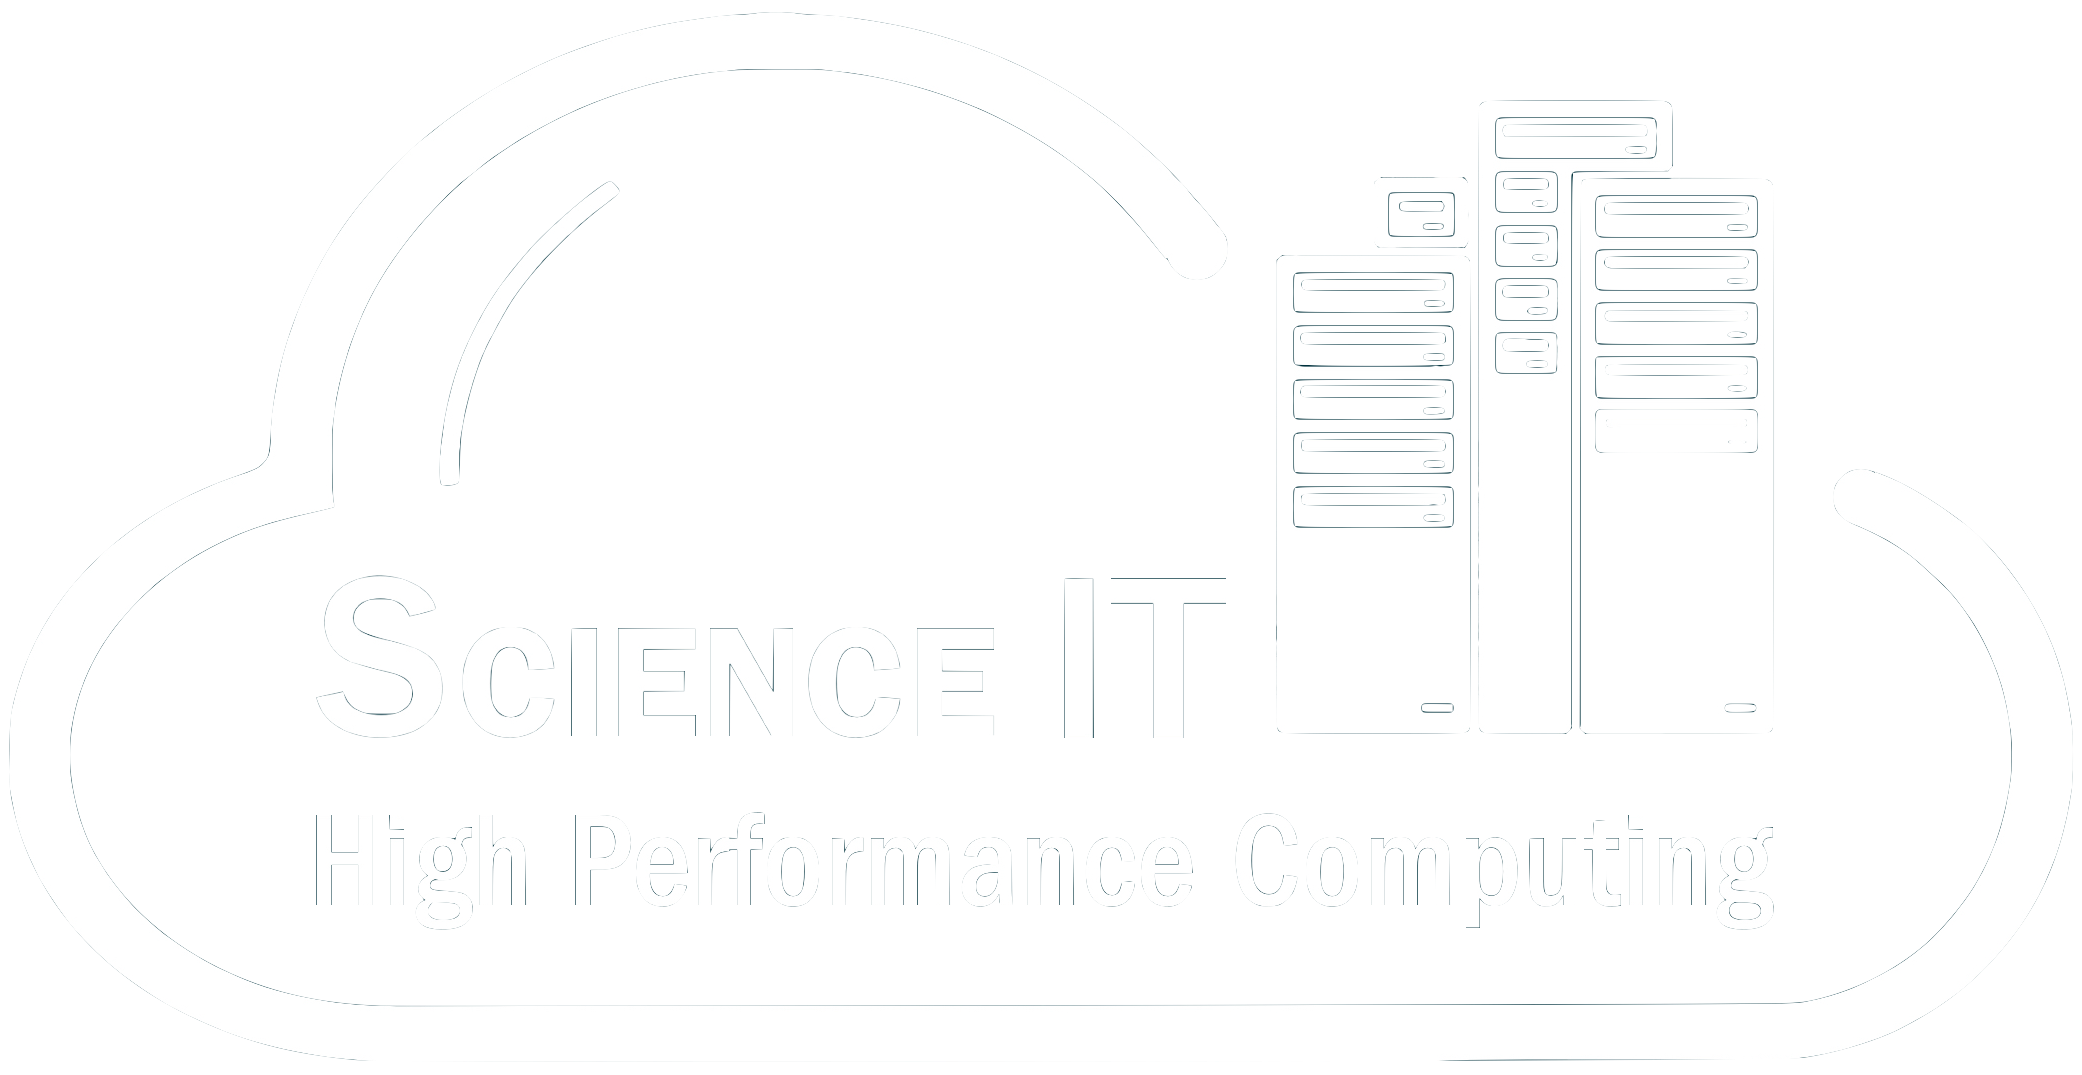 science_it_logo